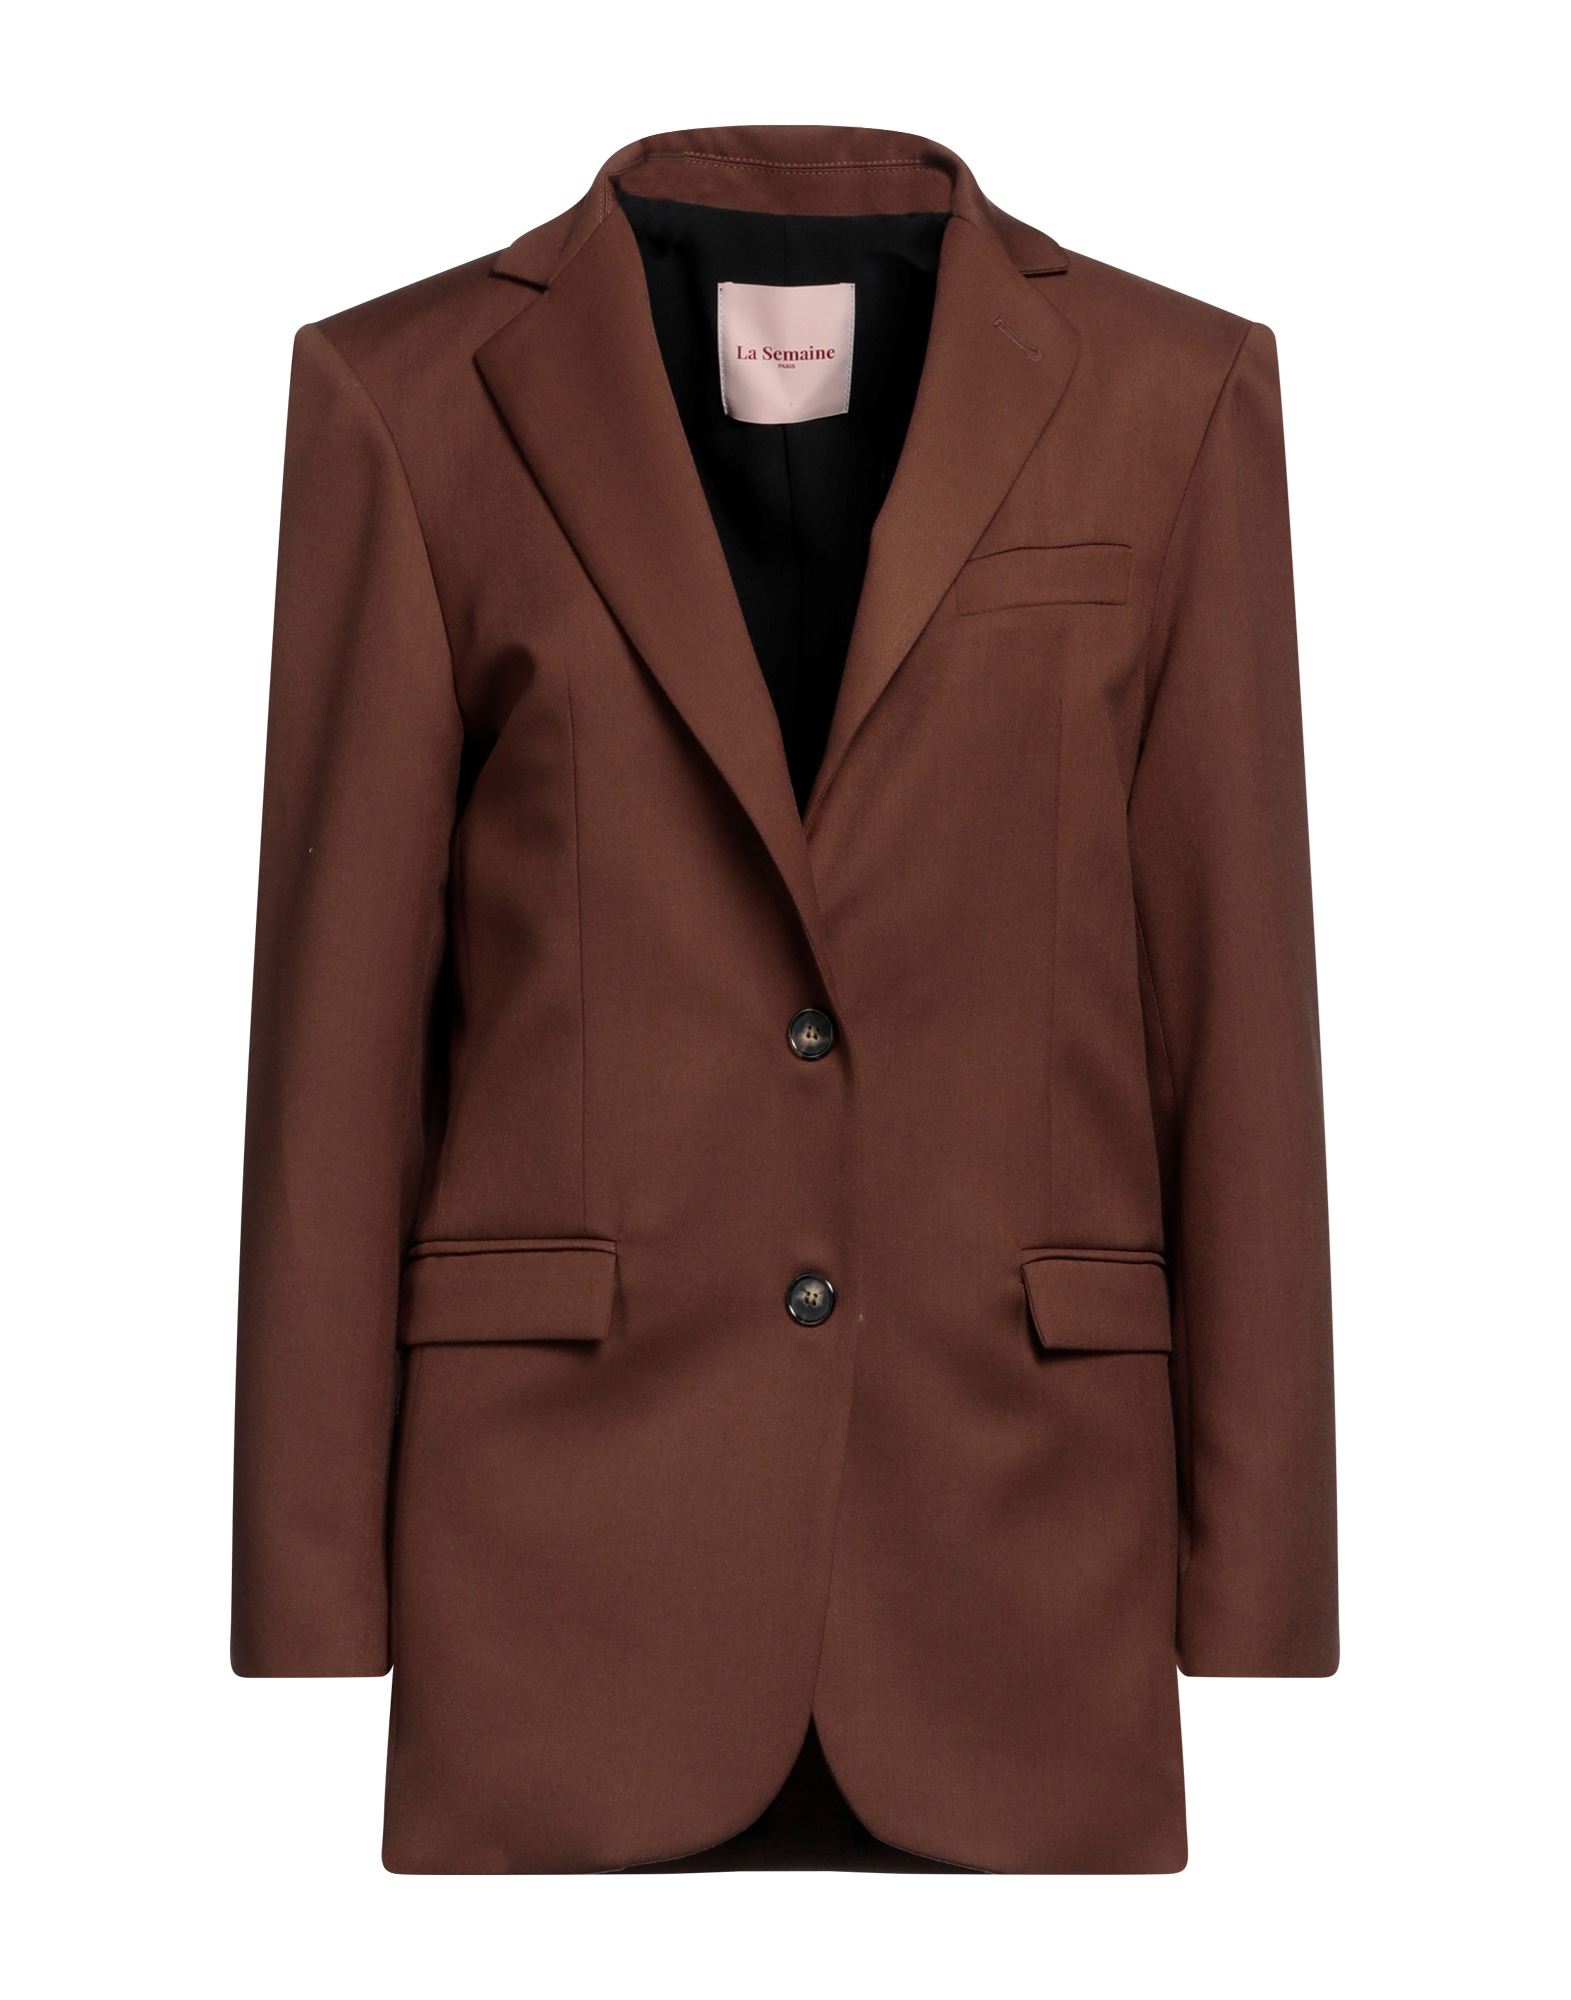 La Semaine Paris Suit Jackets In Brown